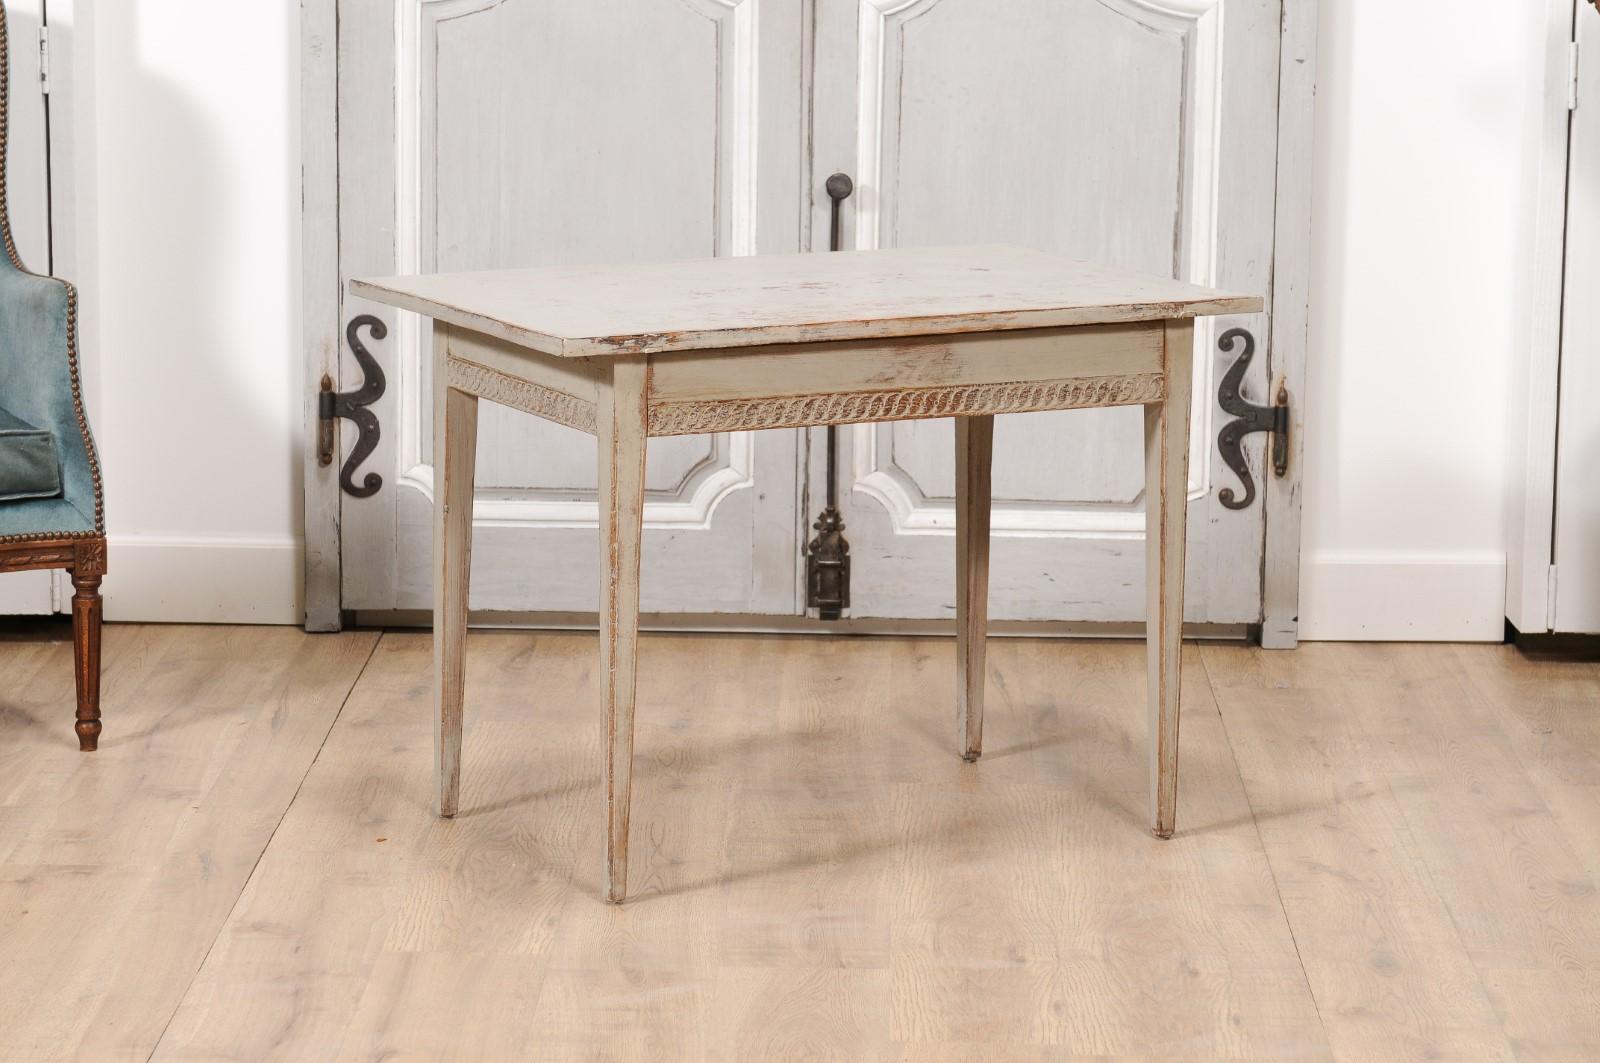 Table d'appoint en bois peint d'époque gustavienne suédoise, vers 1790, avec des guillochis sculptés sur le tablier, une finition vieillie et des pieds fuselés. Plongez dans l'élégance pure et sans artifice du design suédois gustavien avec cette